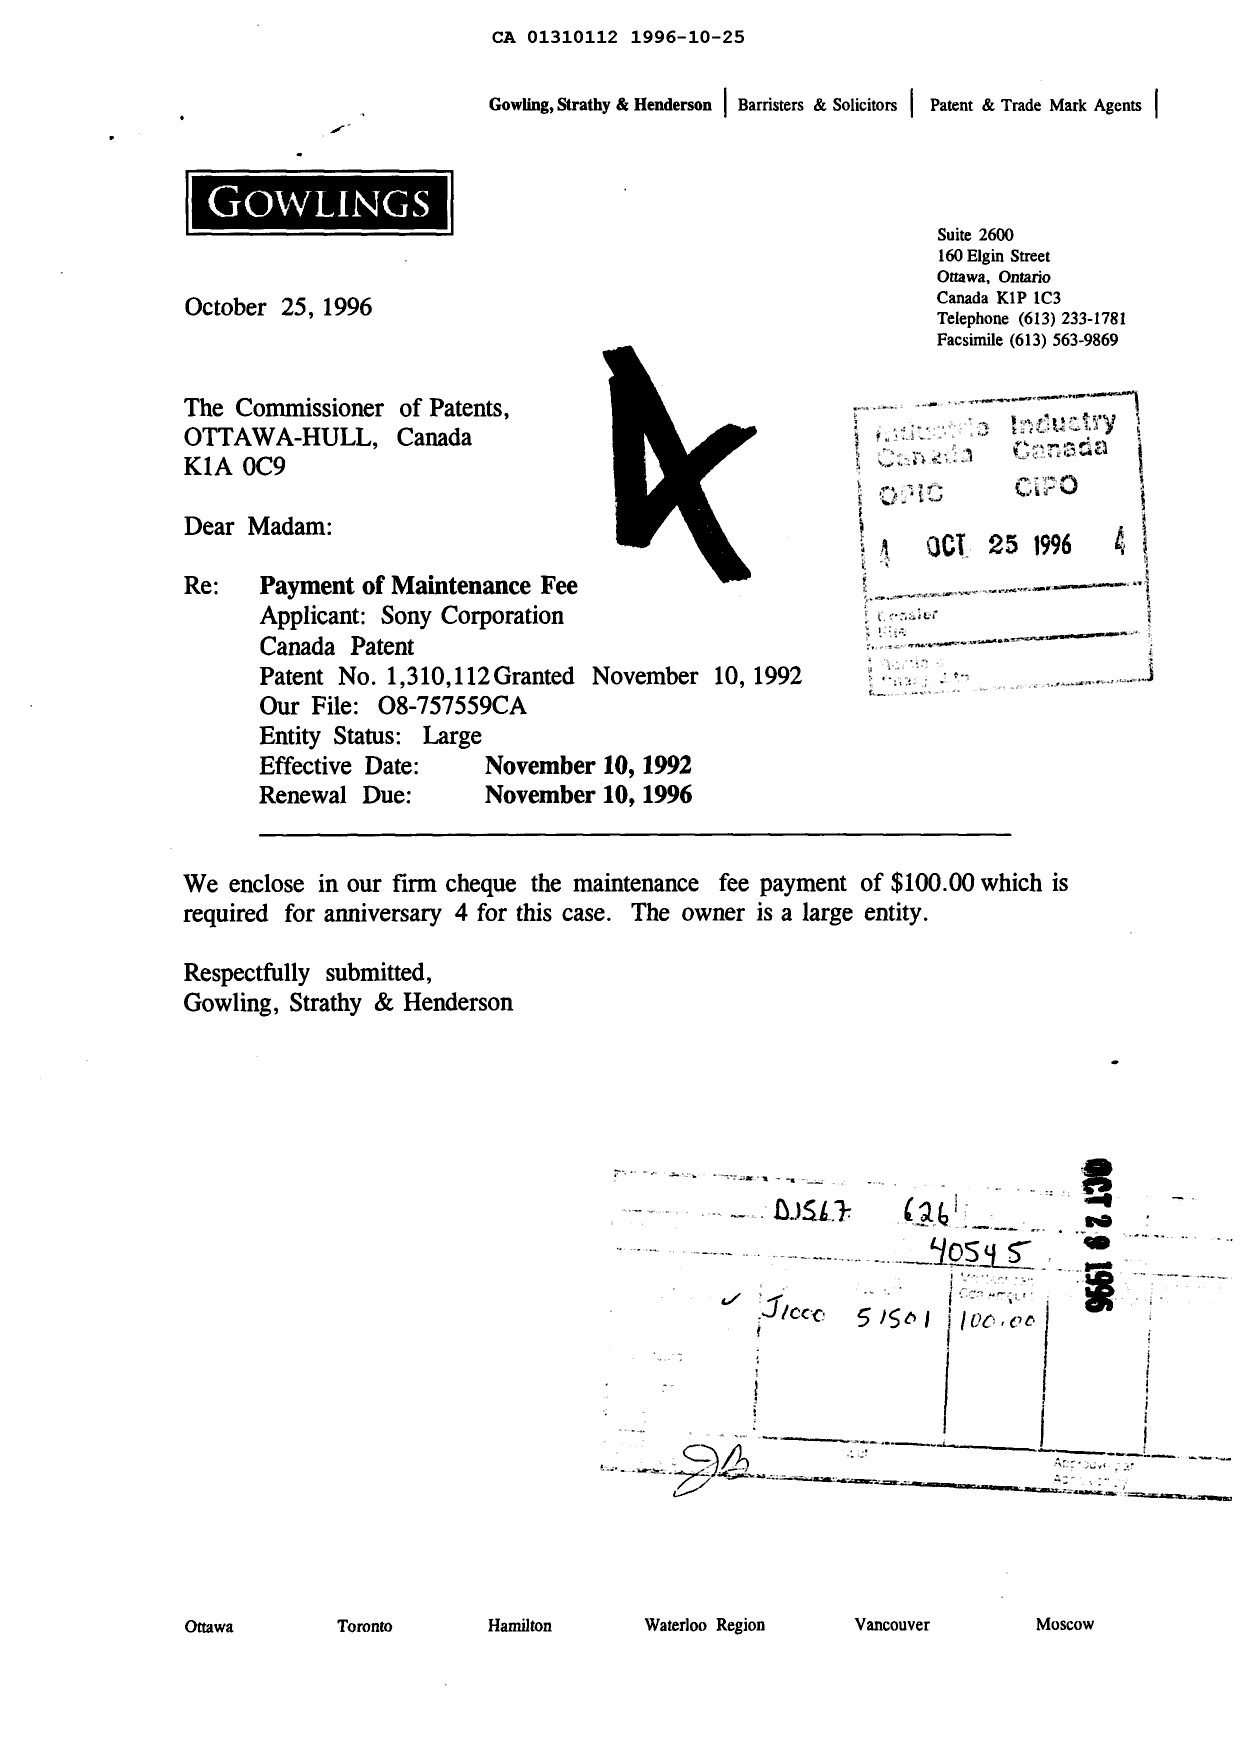 Document de brevet canadien 1310112. Taxes 19961025. Image 1 de 1